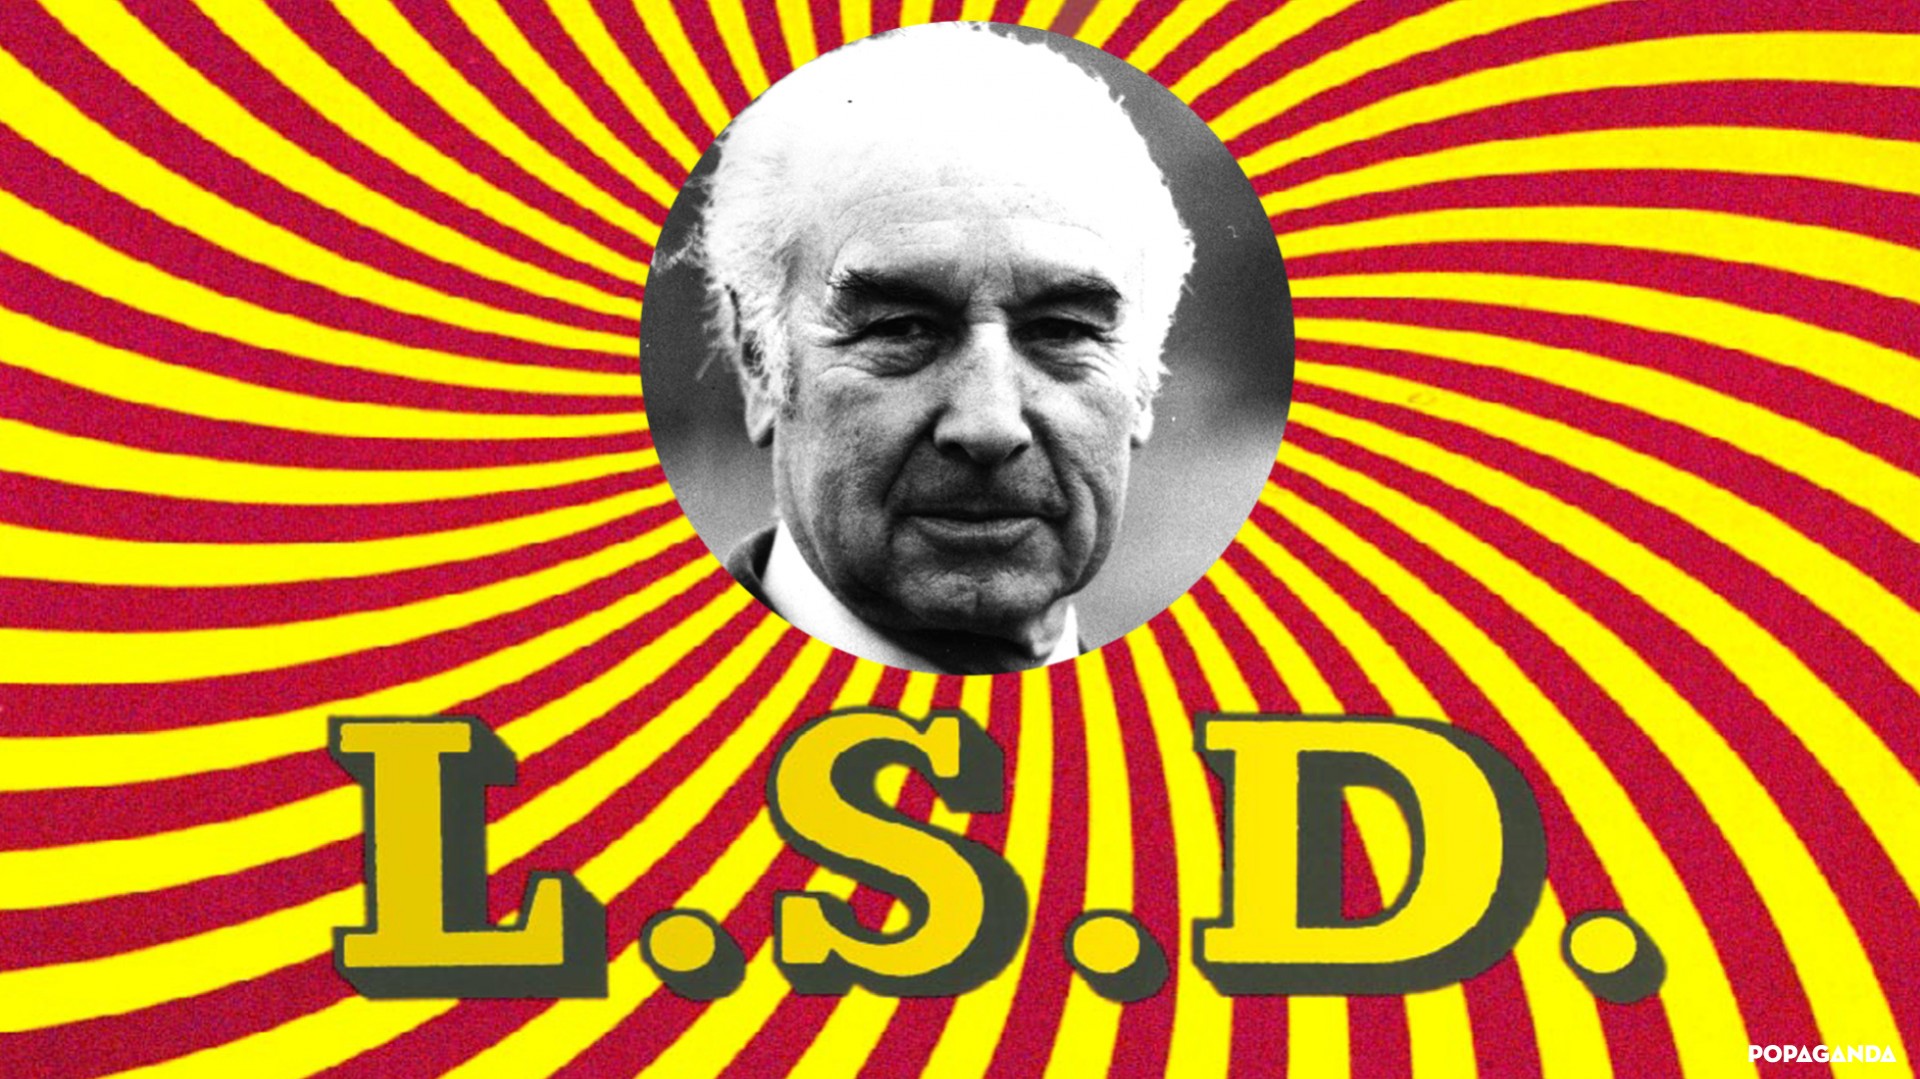 popaganda_LSD8